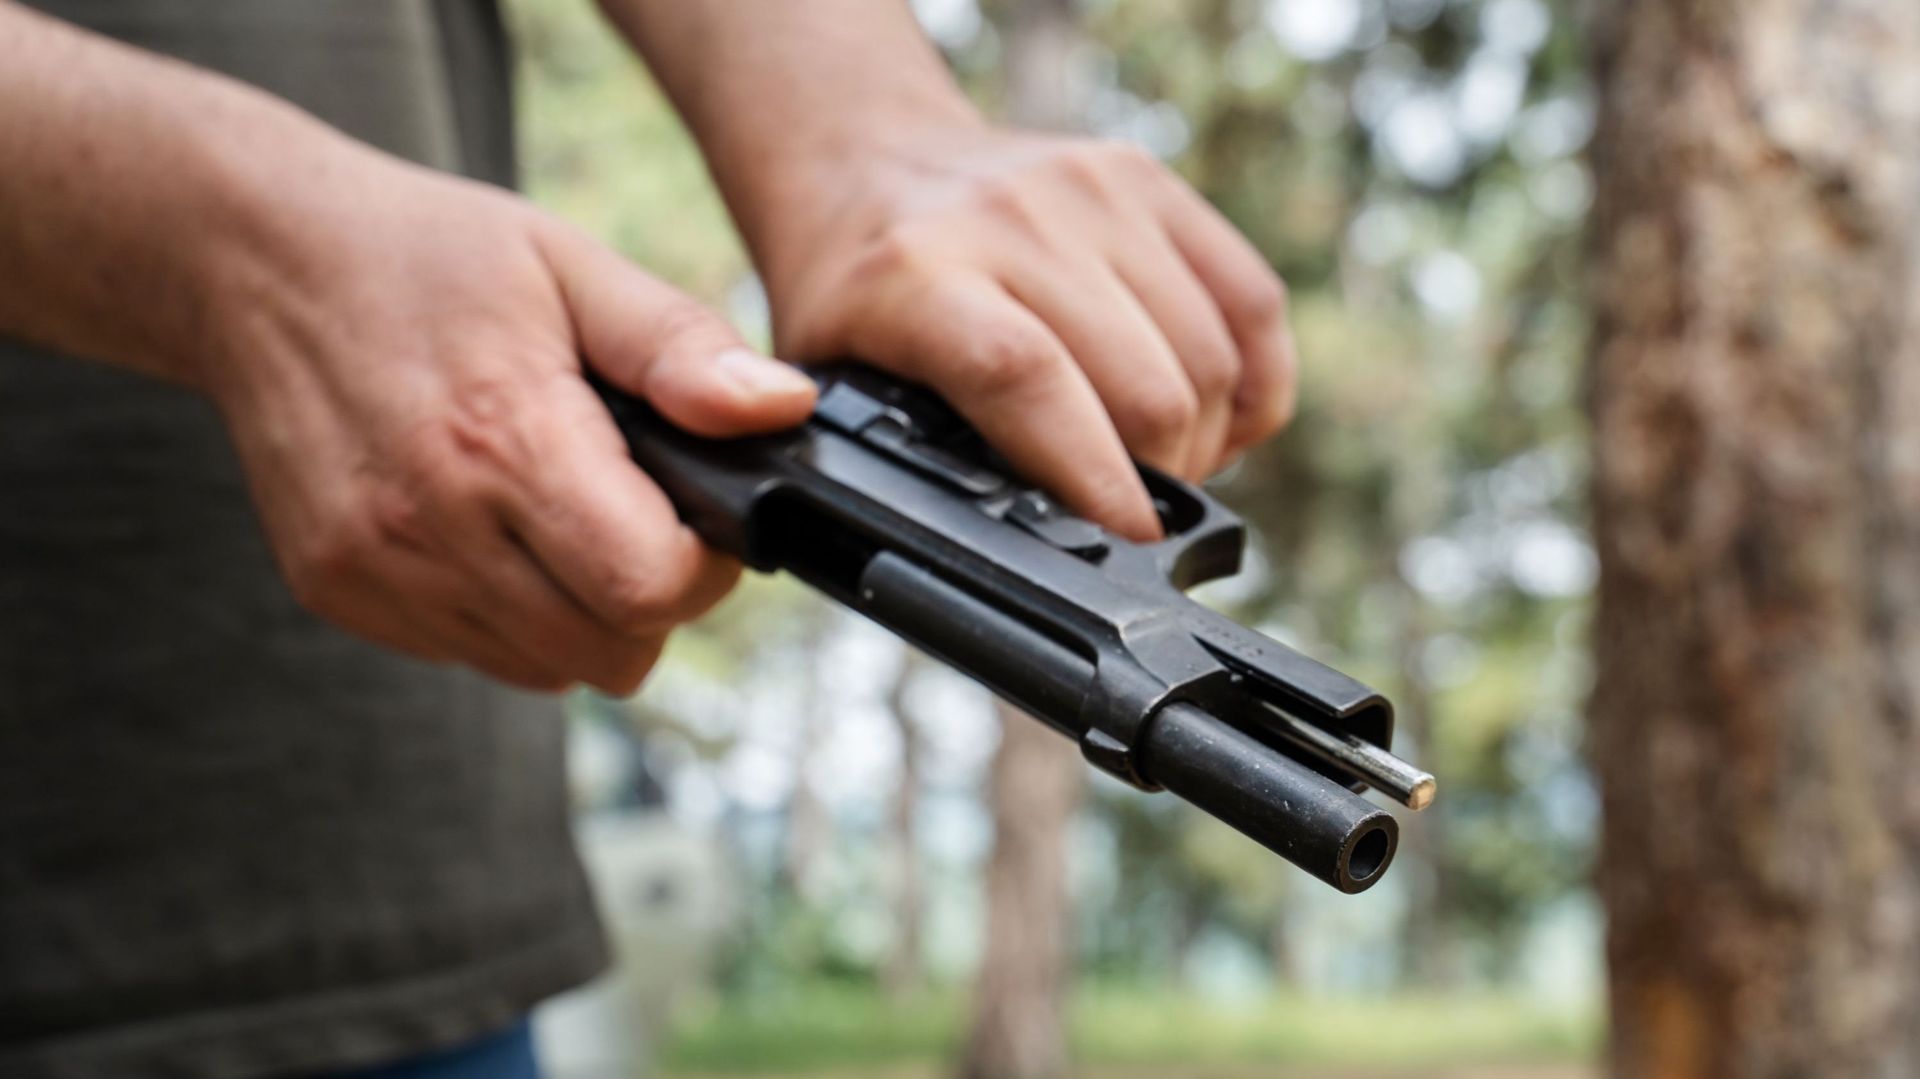 Affaire Alec Baldwin : 5 chiffres sur les décès par arme à feu, accidentels ou non, aux États-Unis